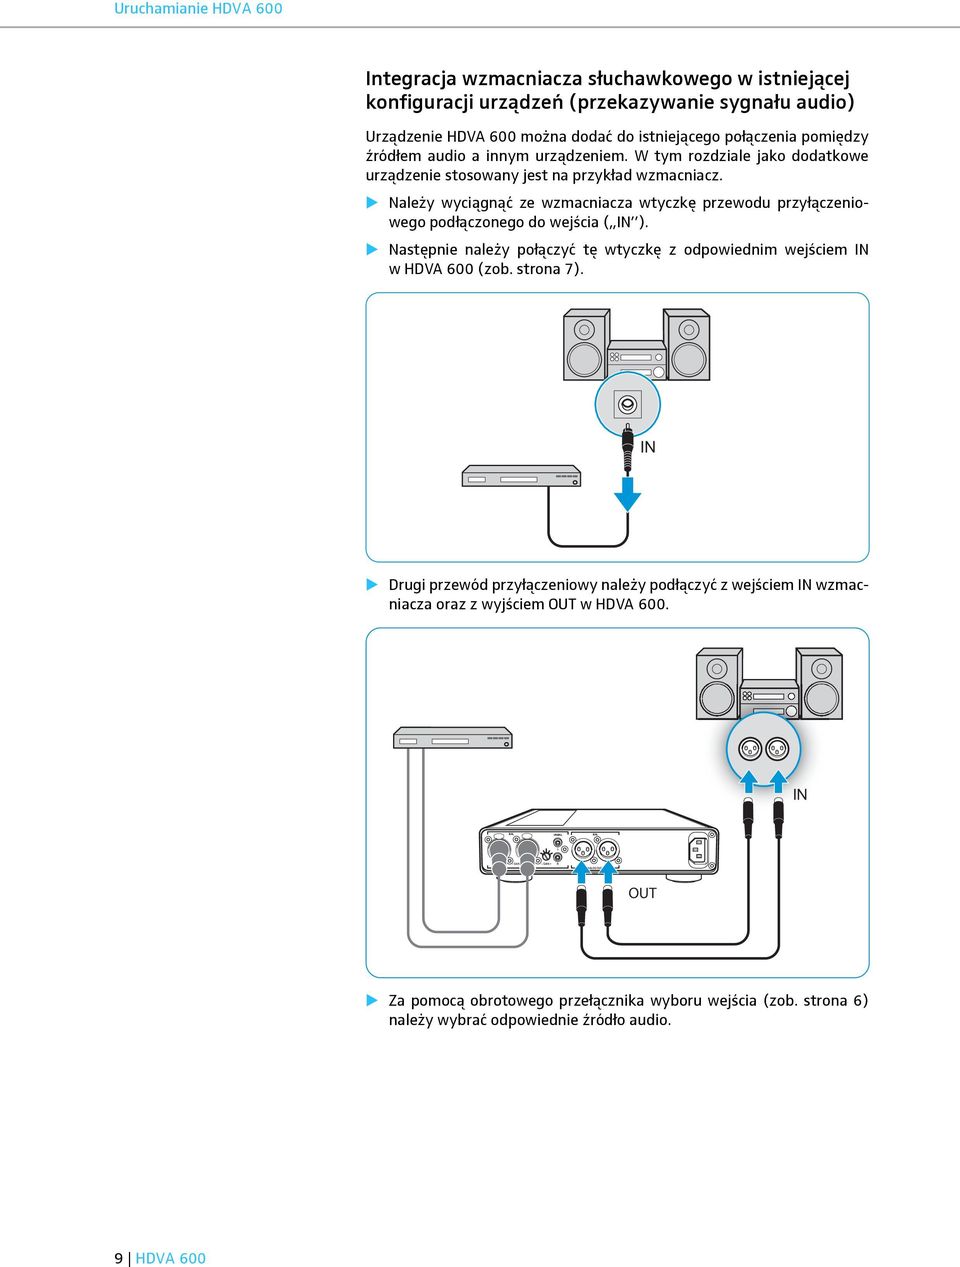 Należy wyciągnąć ze wzmacniacza wtyczkę przewodu przyłączeniowego podłączonego do wejścia ( IN ). Następnie należy połączyć tę wtyczkę z odpowiednim wejściem IN w HDVA 600 (zob. strona 7).